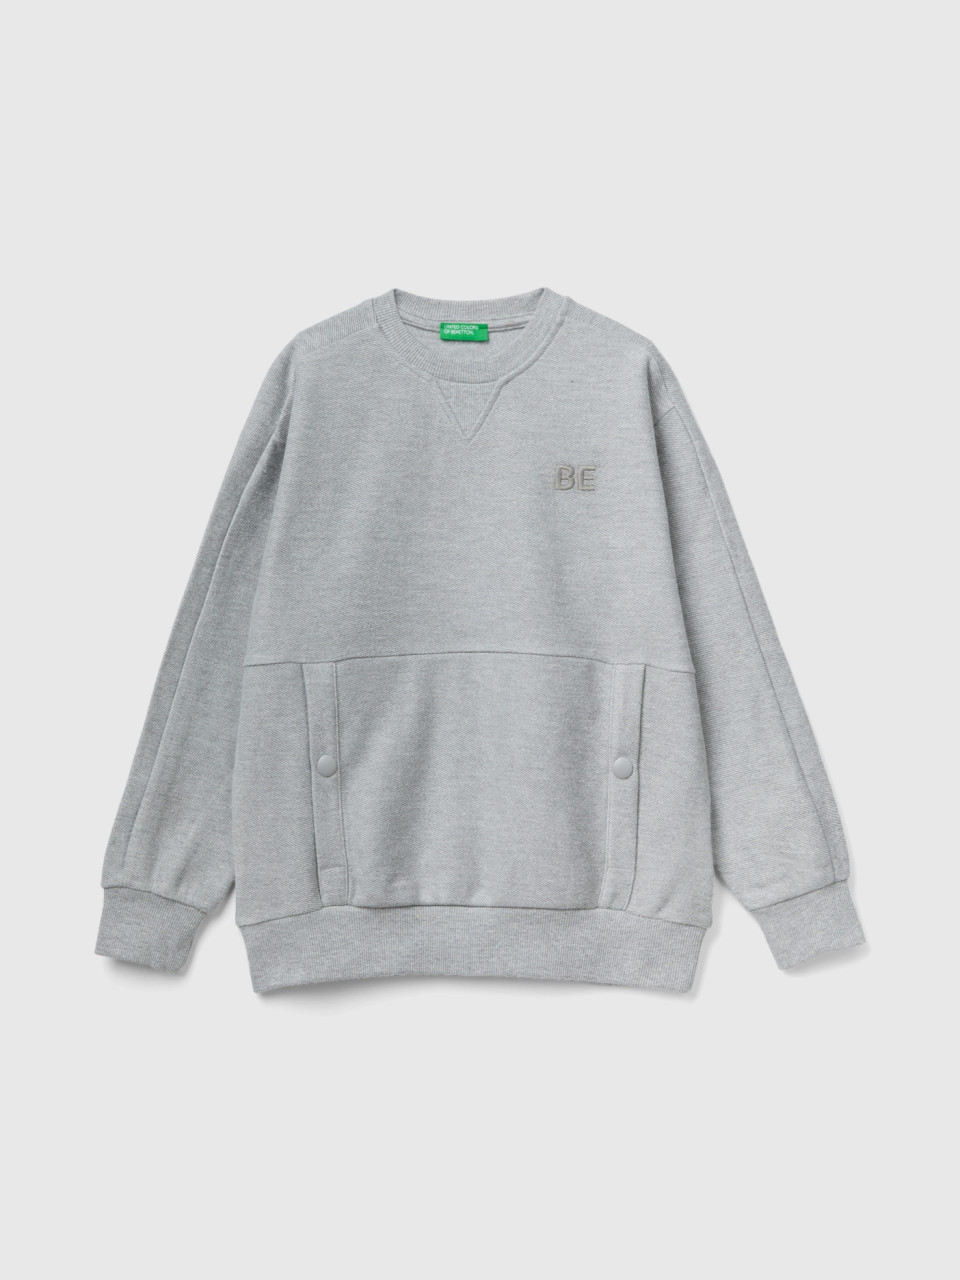 Benetton, Sweatshirt Mit Taschen Und be-stickerei, Grau, male